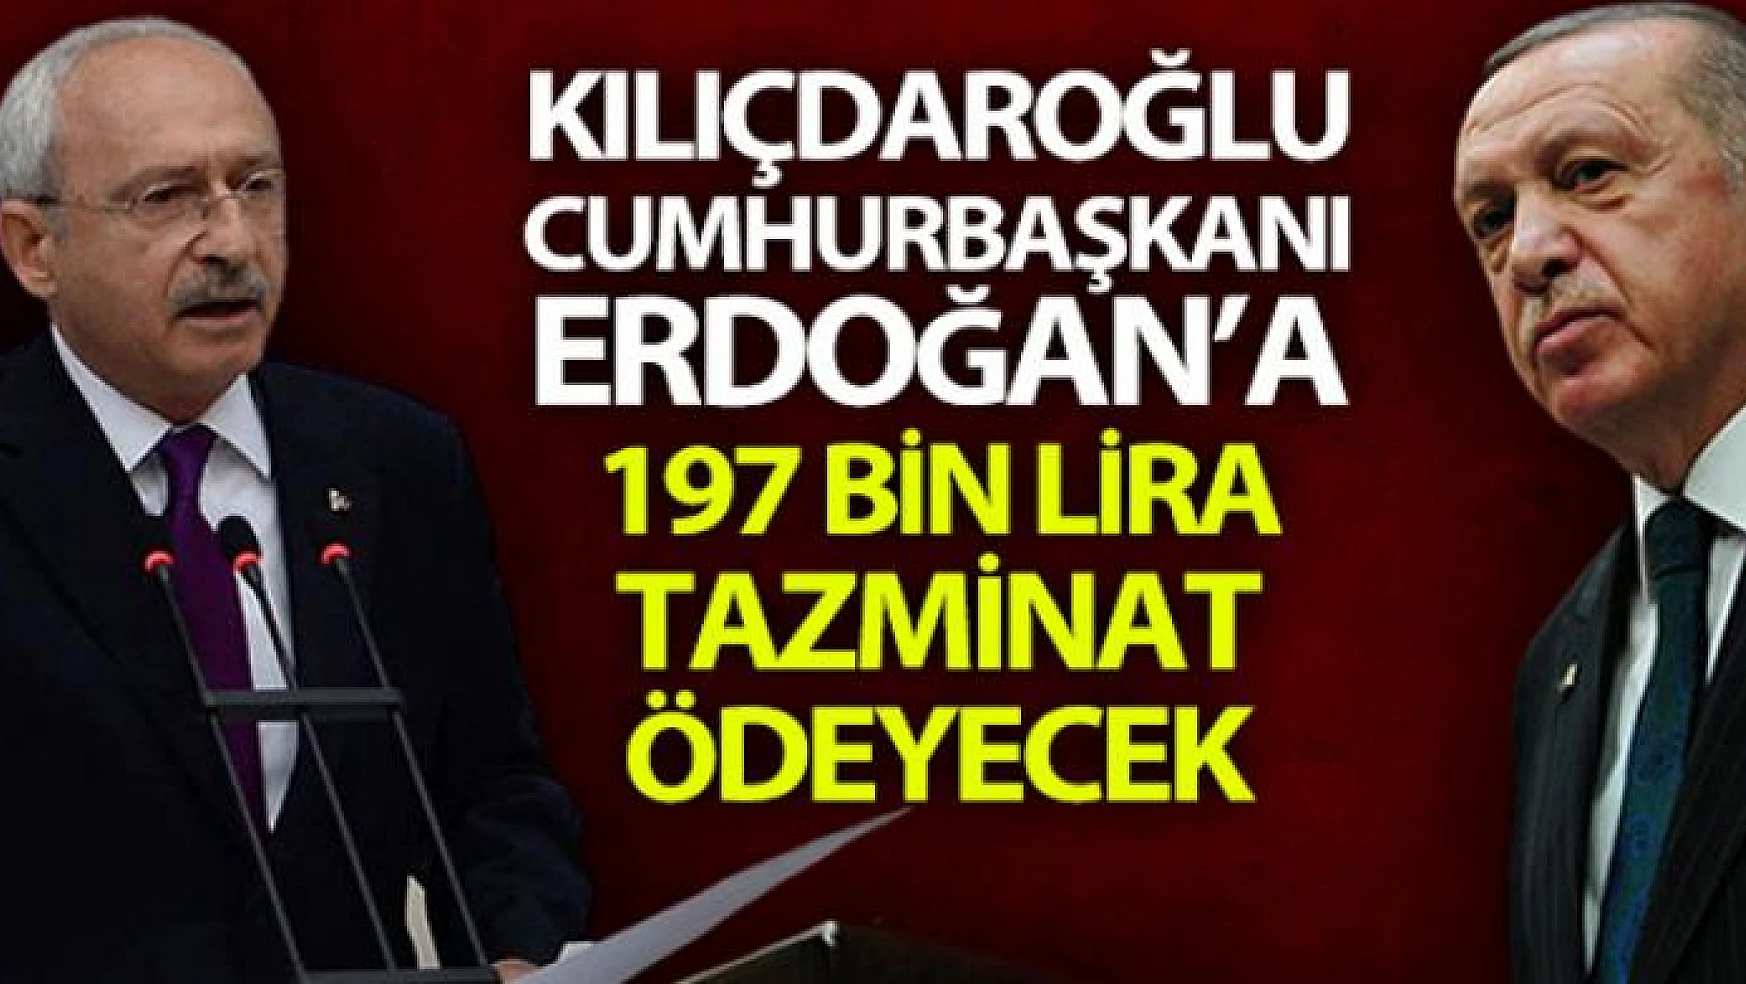 Kılıçdaroğlu, Cumhurbaşkanı Erdoğan ve yakınlarına 197 bin lira tazminat ödeyecek